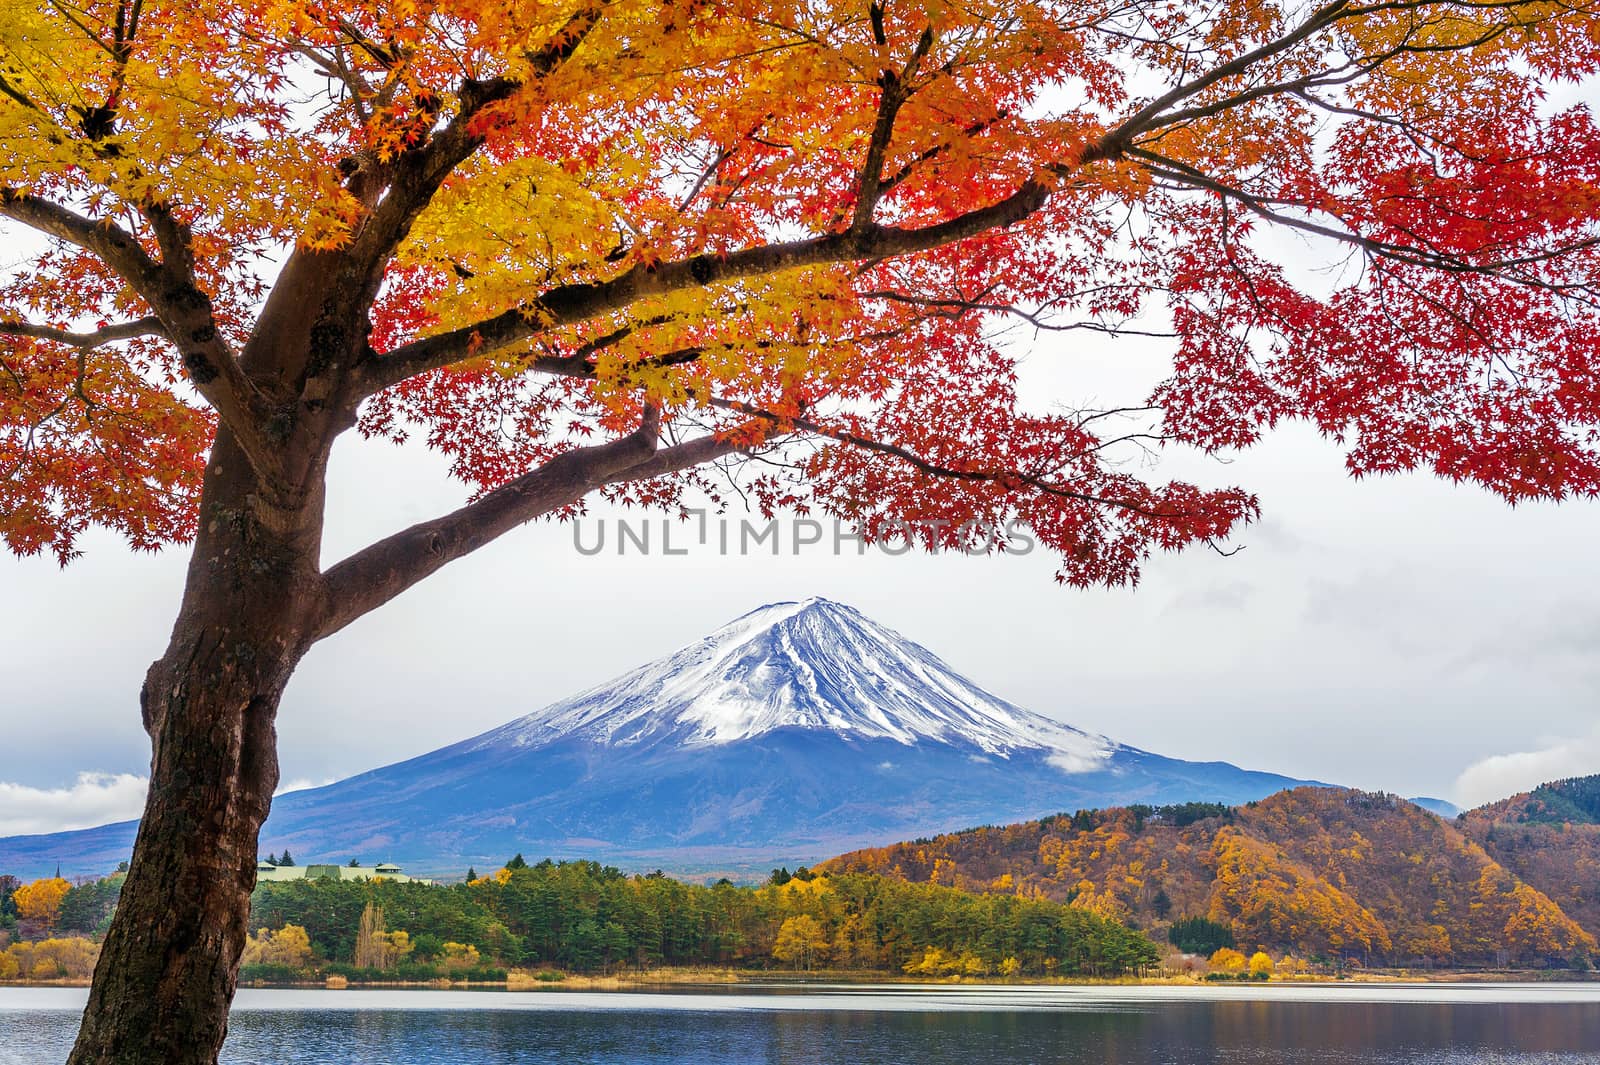 Autumn Season and Fuji mountains at Kawaguchiko lake, Japan.